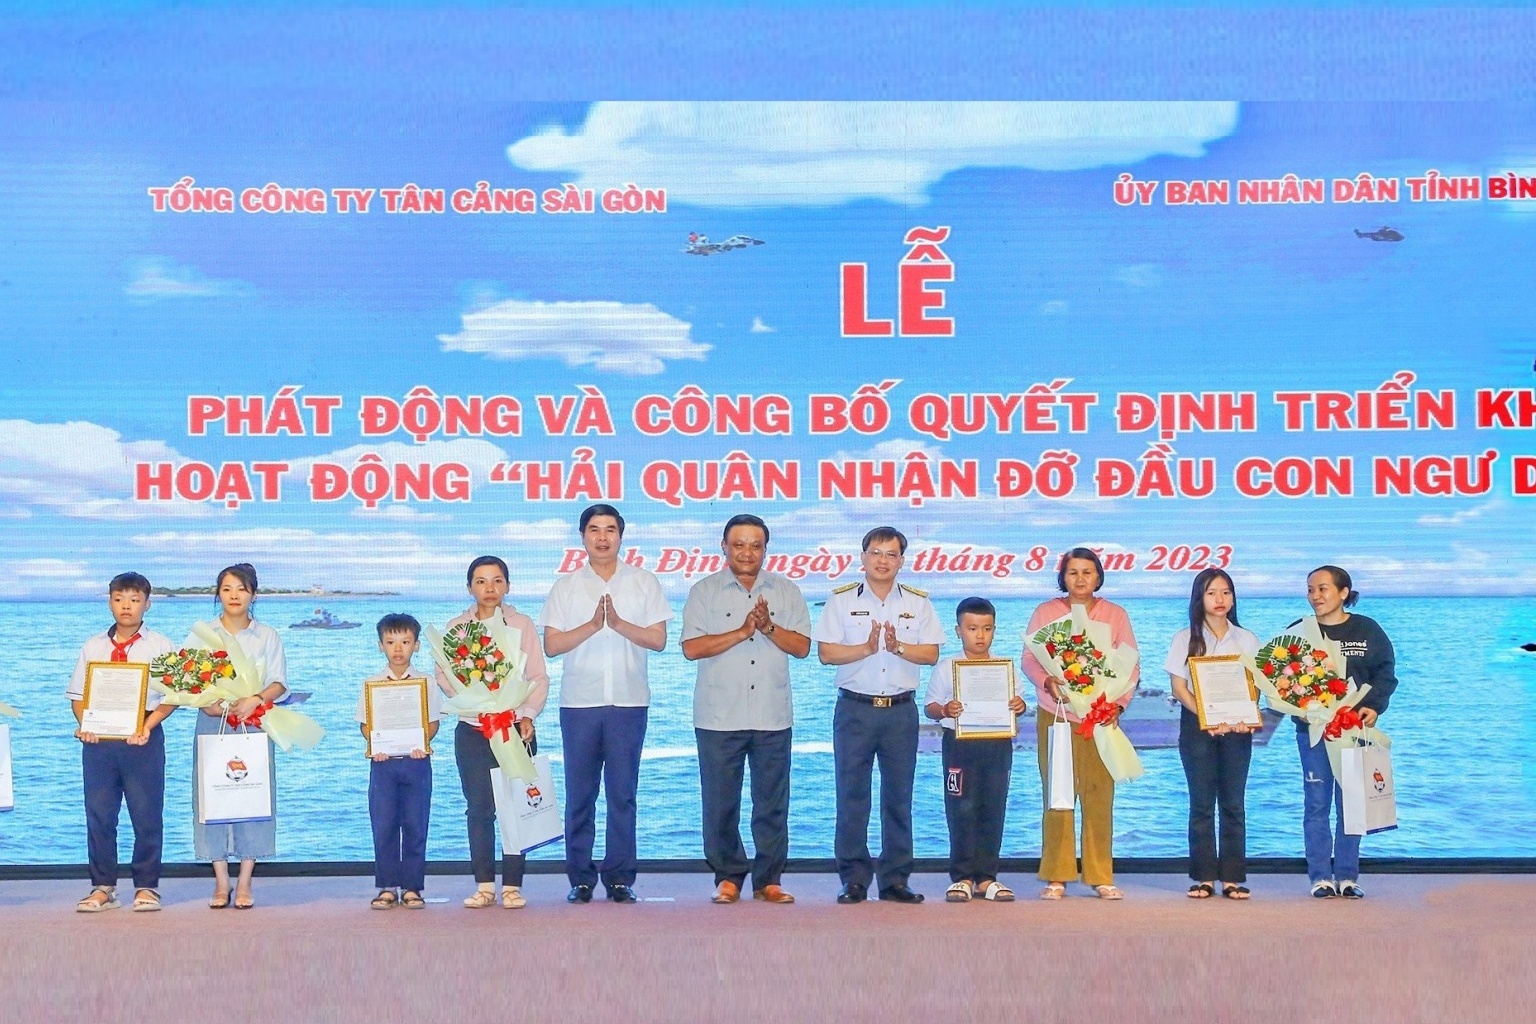 Tổng Công ty Tân Cảng Sài Gòn nhận đỡ đầu con ngư dân tại Bình Định